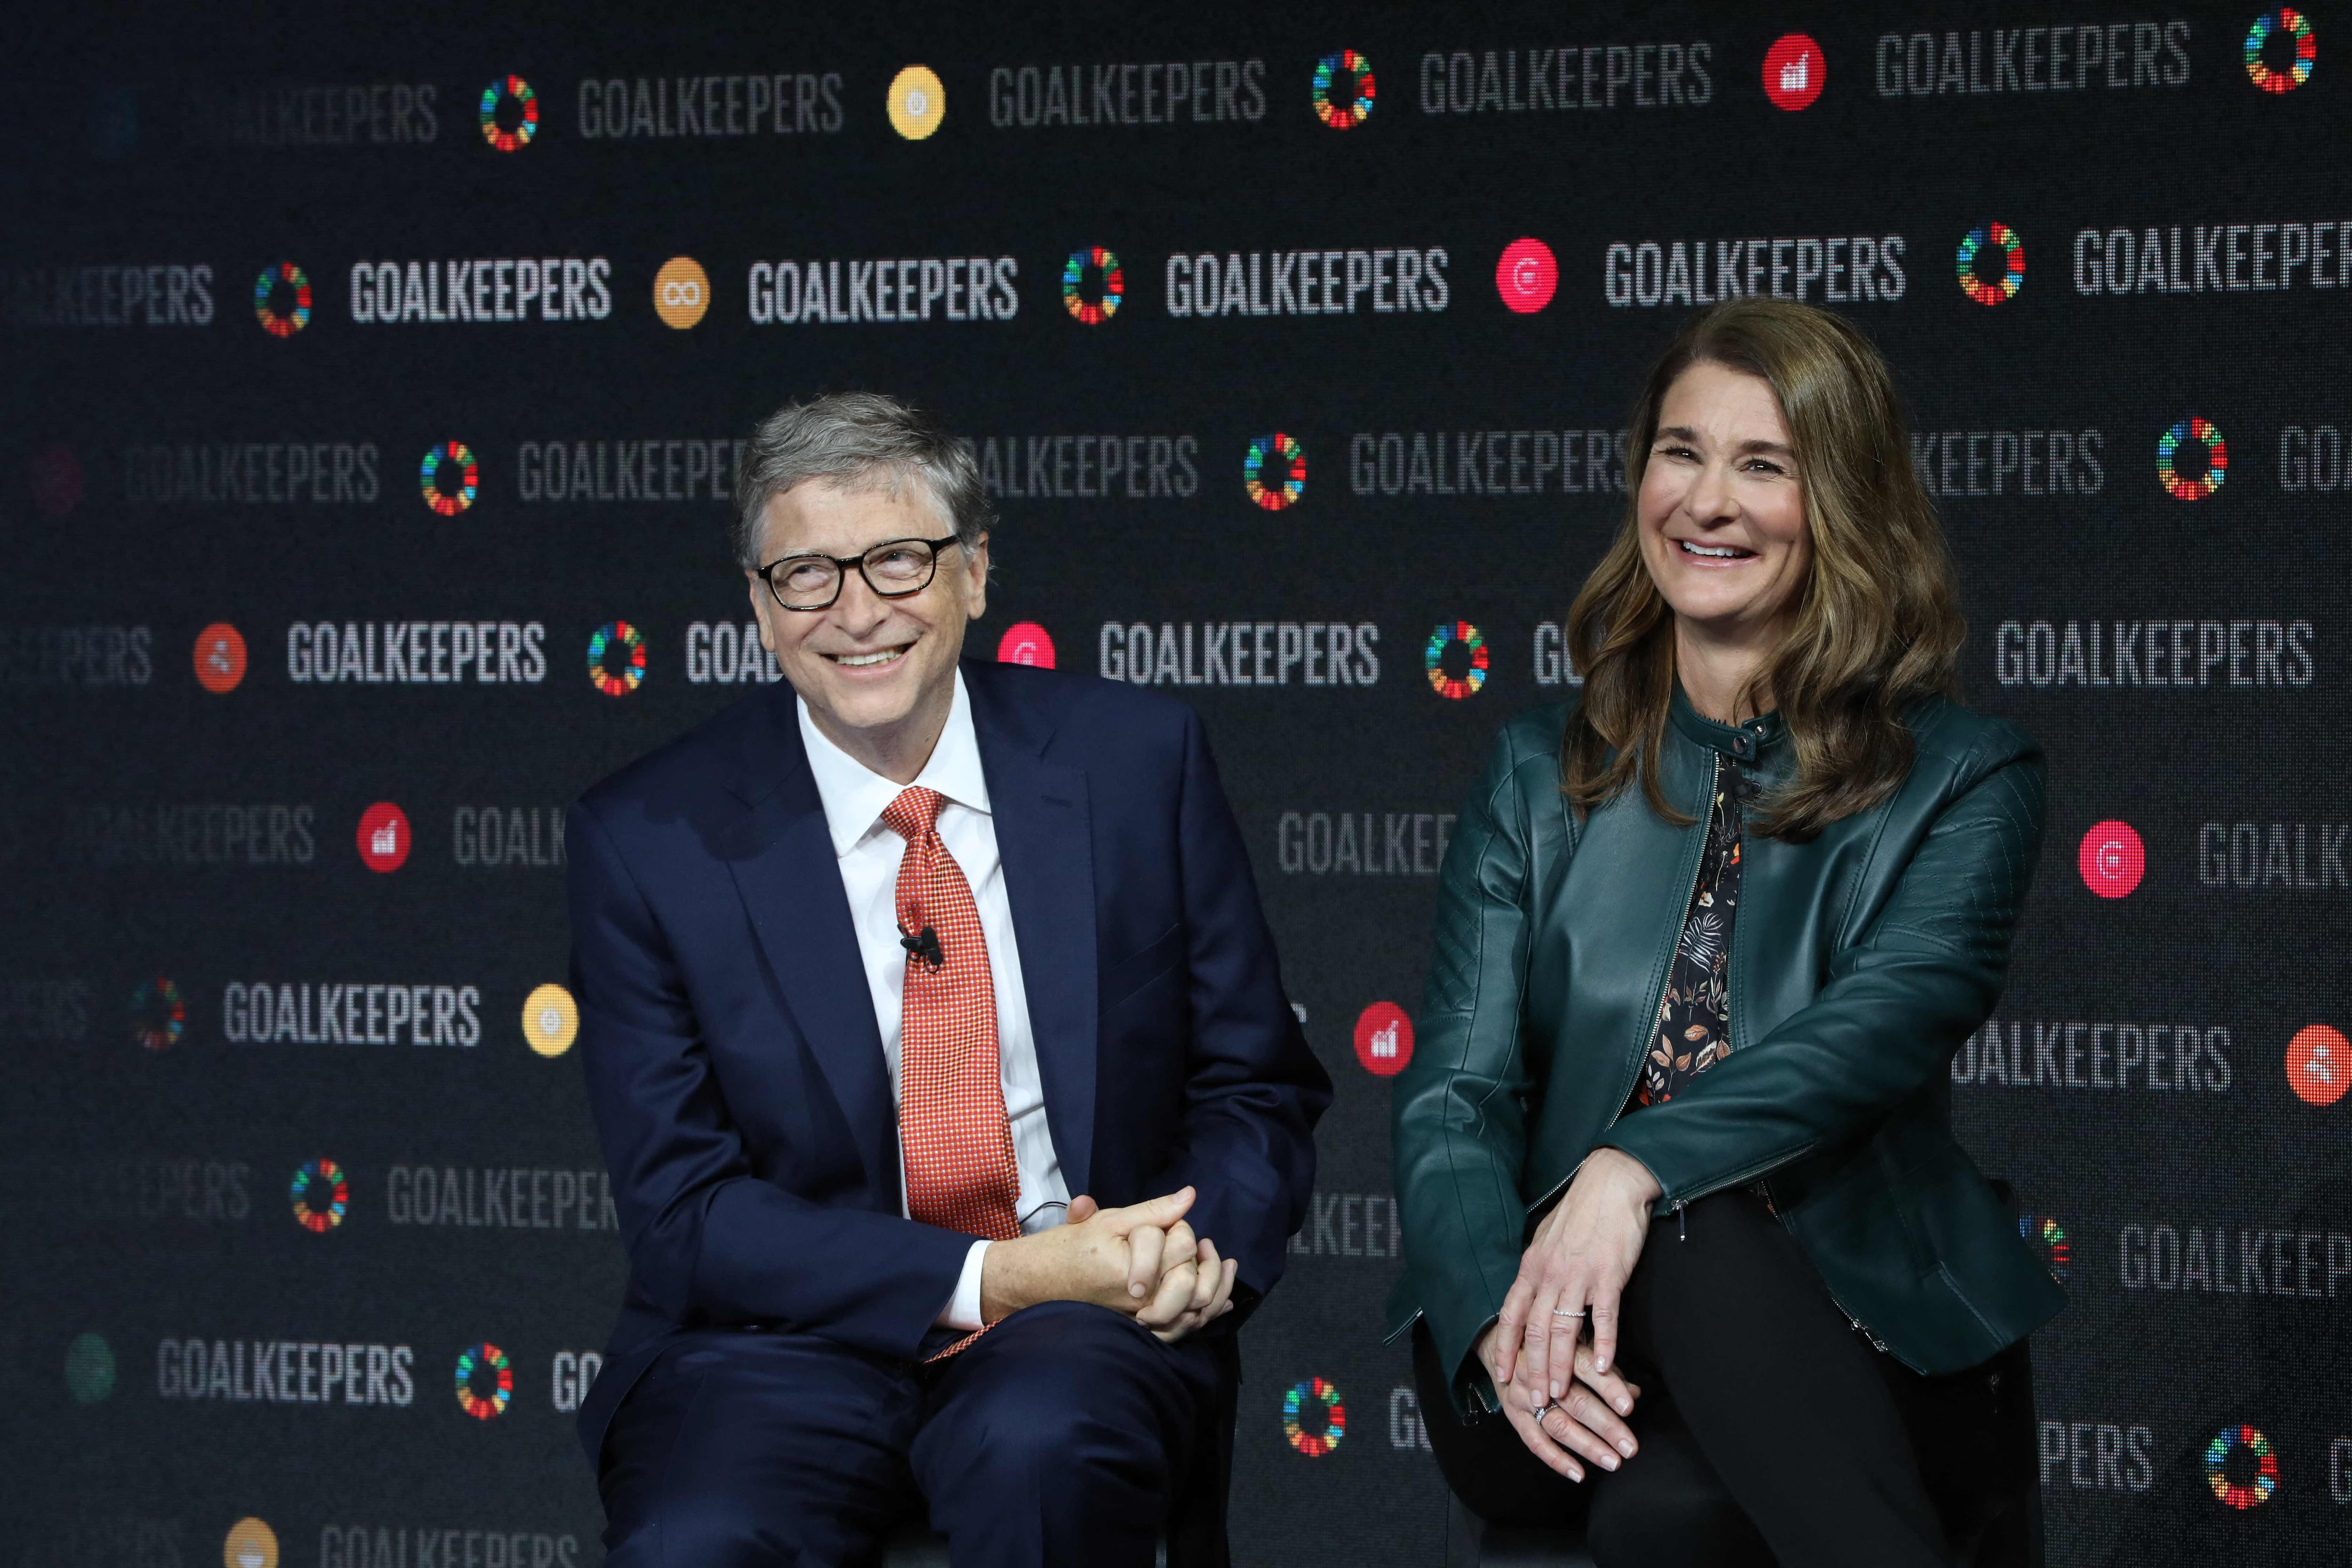 La historia de amor de Melinda y Bill Gates comenzó por una casualidad